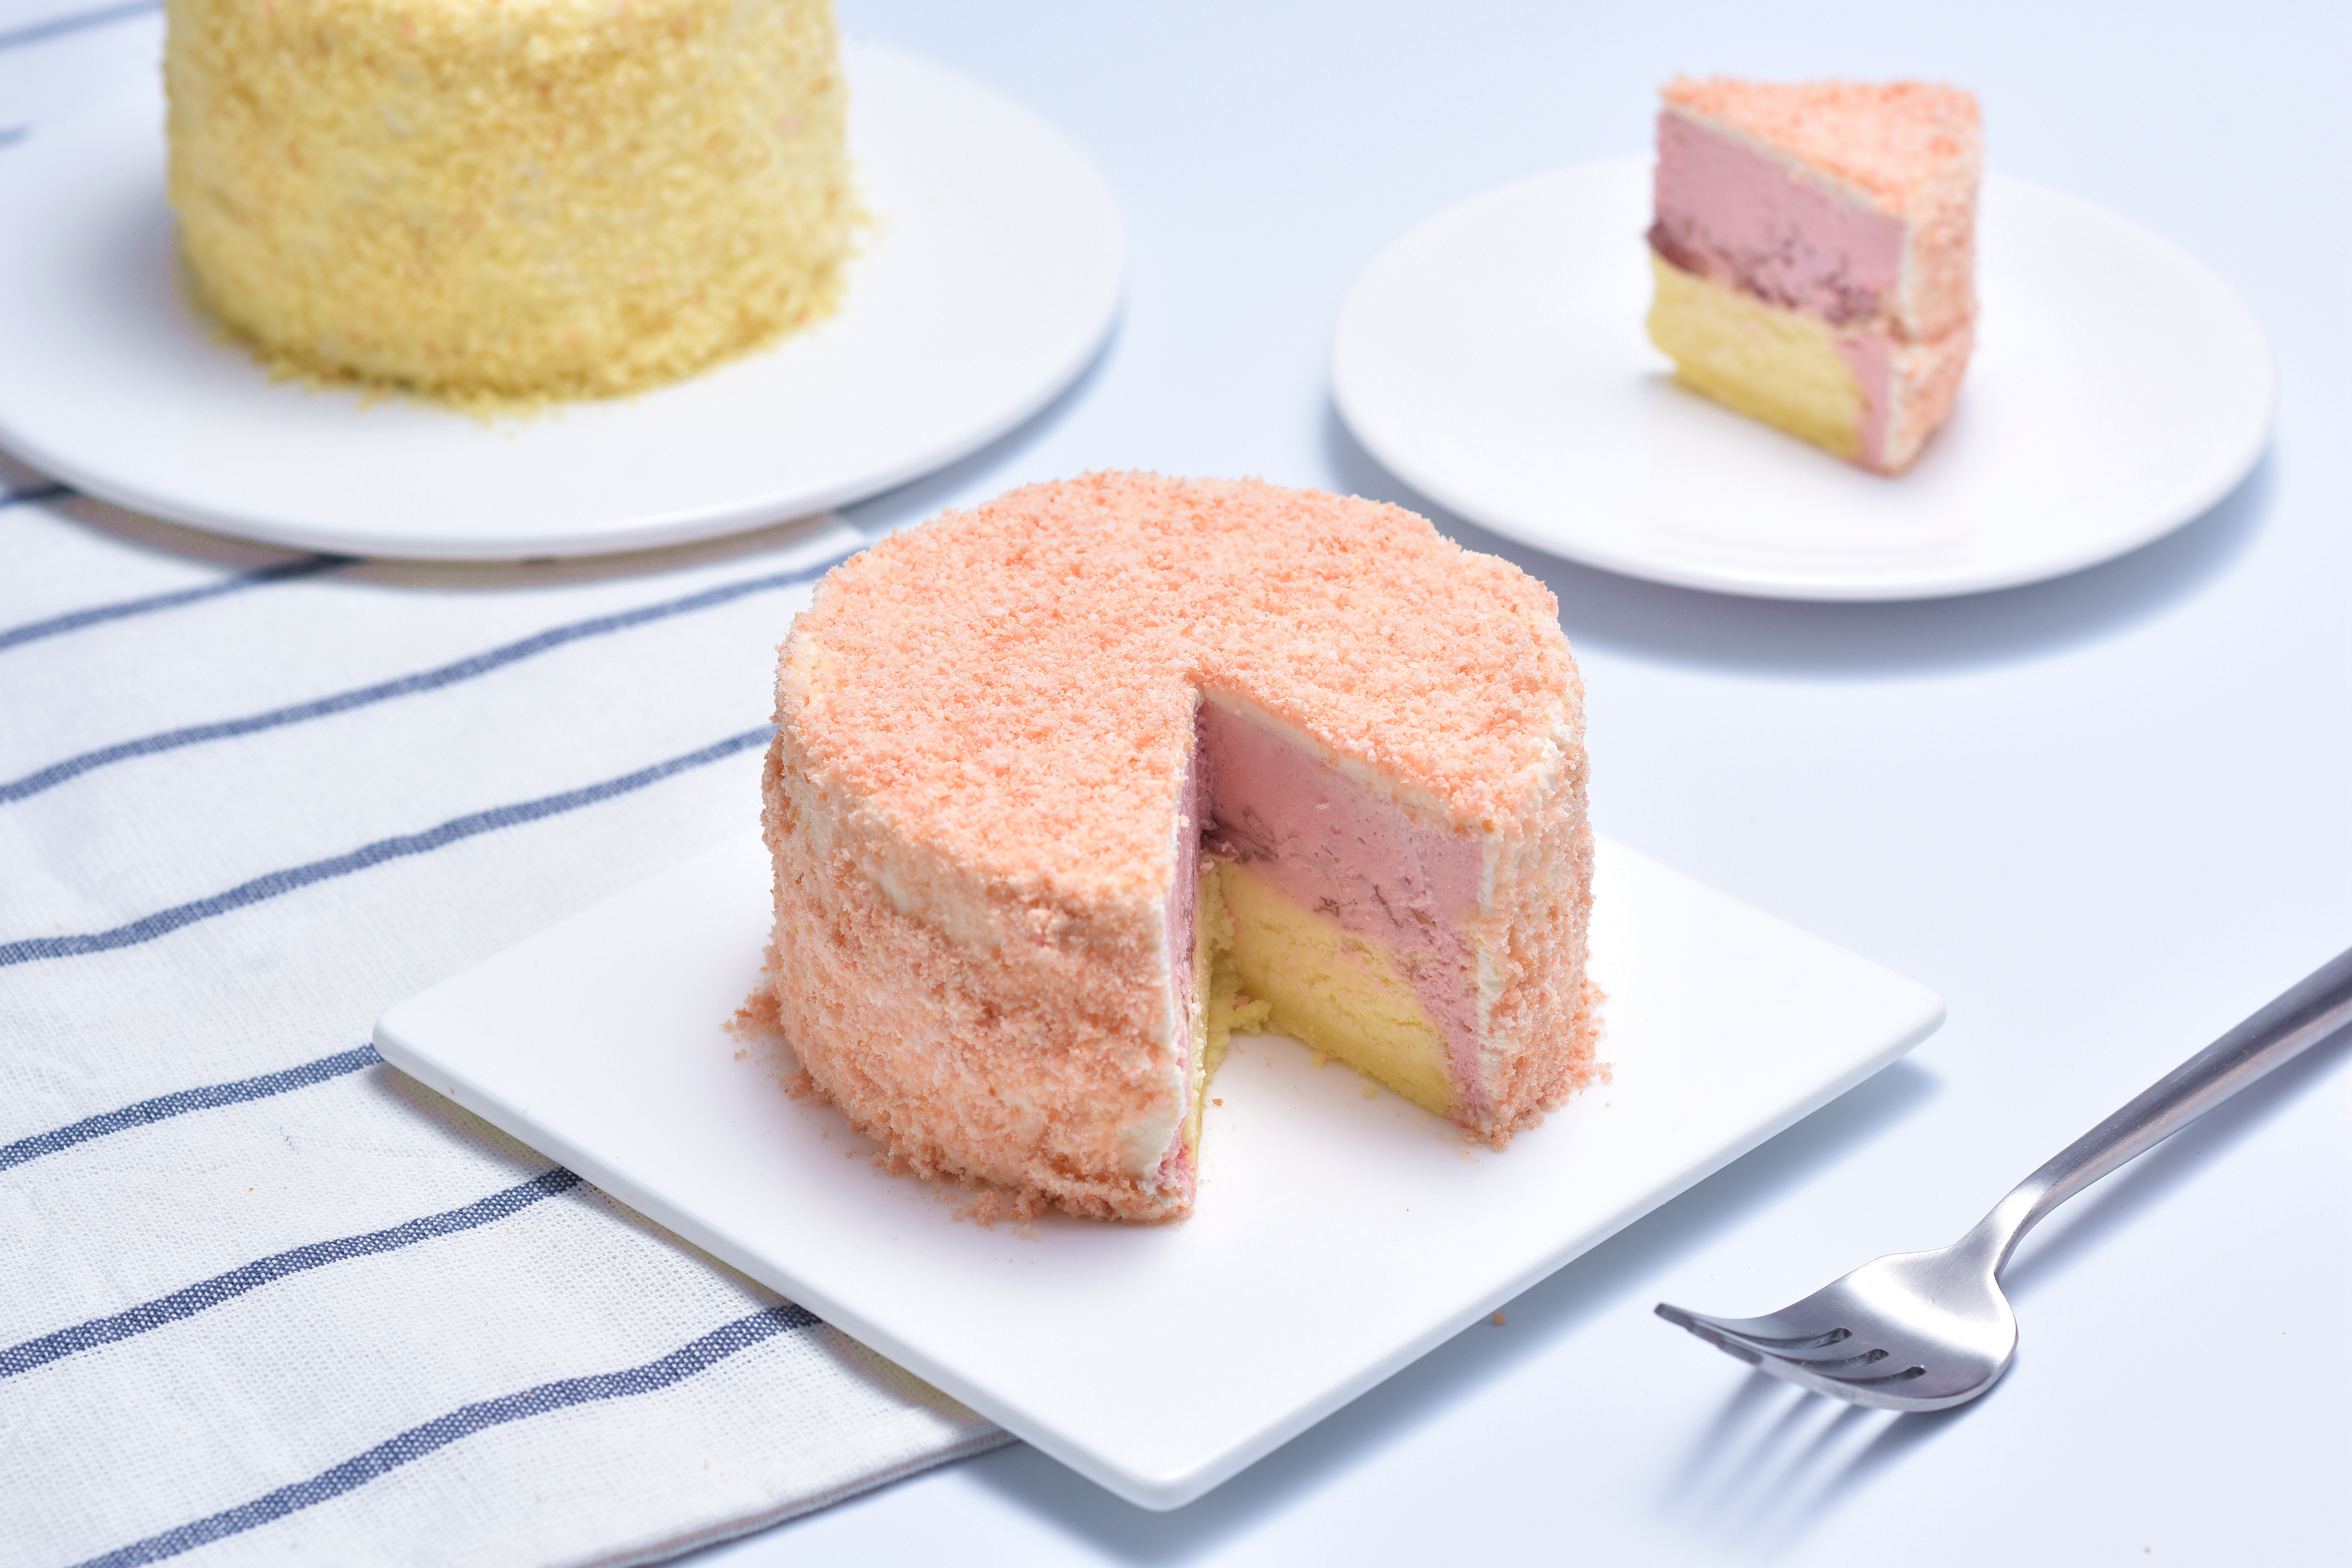 小清新「双层芝士半乳酪蛋糕」的超简单做法